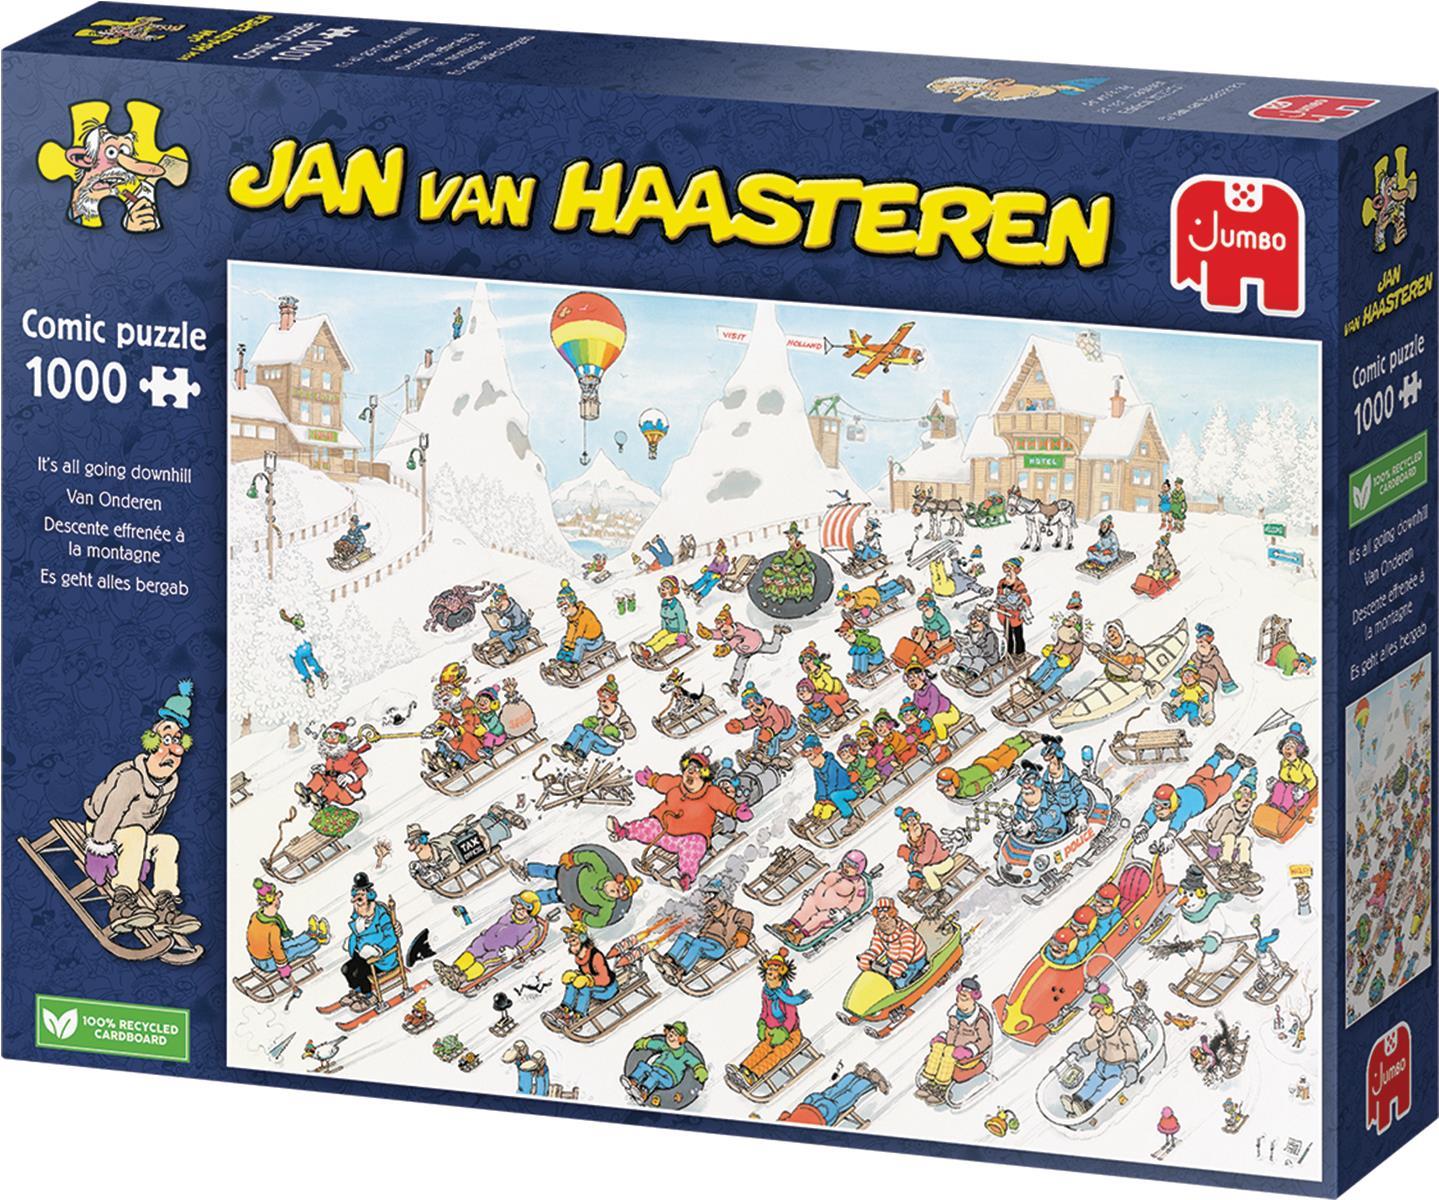 Jan van Haasteren 1110100025 Puzzle Puzzlespiel 1000 Stück(e) Humor (JUM00025)